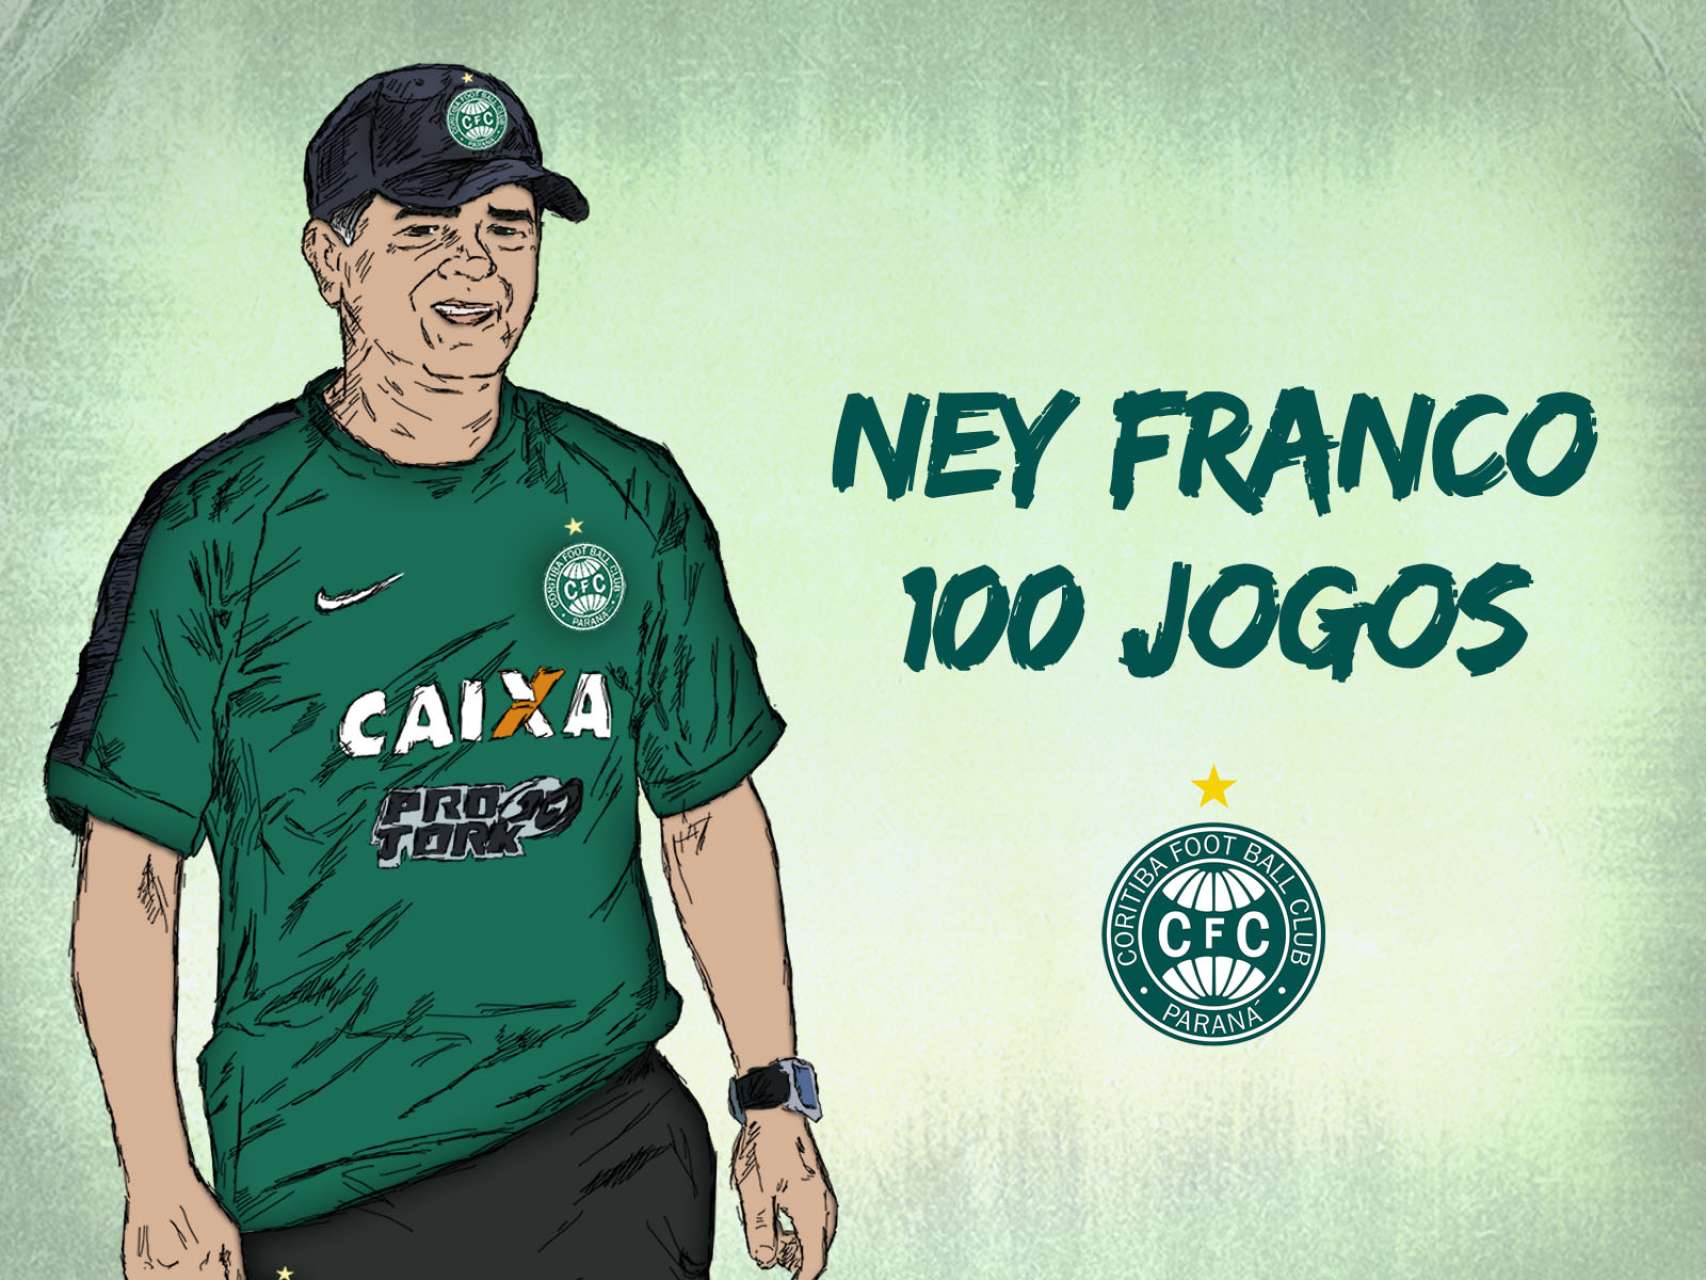 100 jogos de Ney Franco